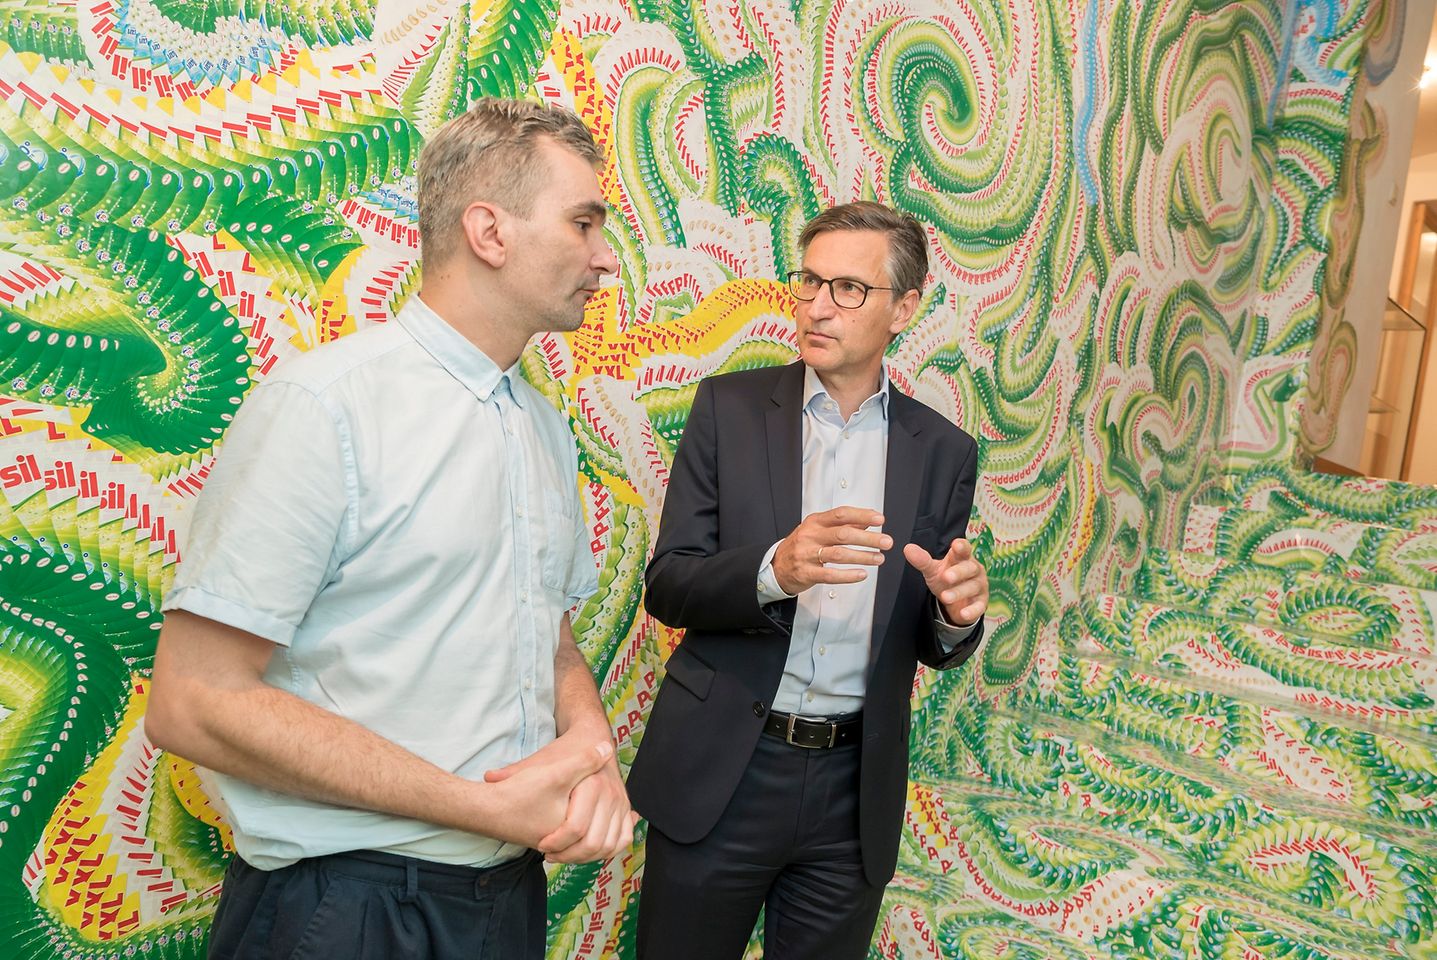 Der Künstler Milan Mladenovic (li.) mit Henkel-Manager Georg Grassl im von ihm gestalteten Stiegenaufgang in der Galerie Georg Kargl in der Schleifmühlgasse 5 im vierten Wiener Gemeindebezirk.